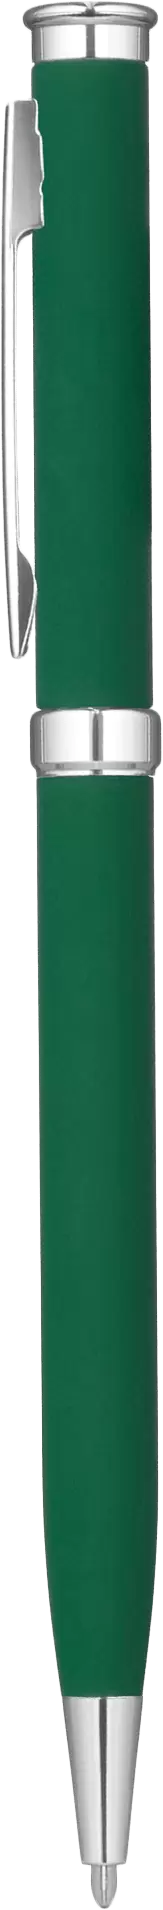 Ручка METEOR SOFT Зеленый 1130-02